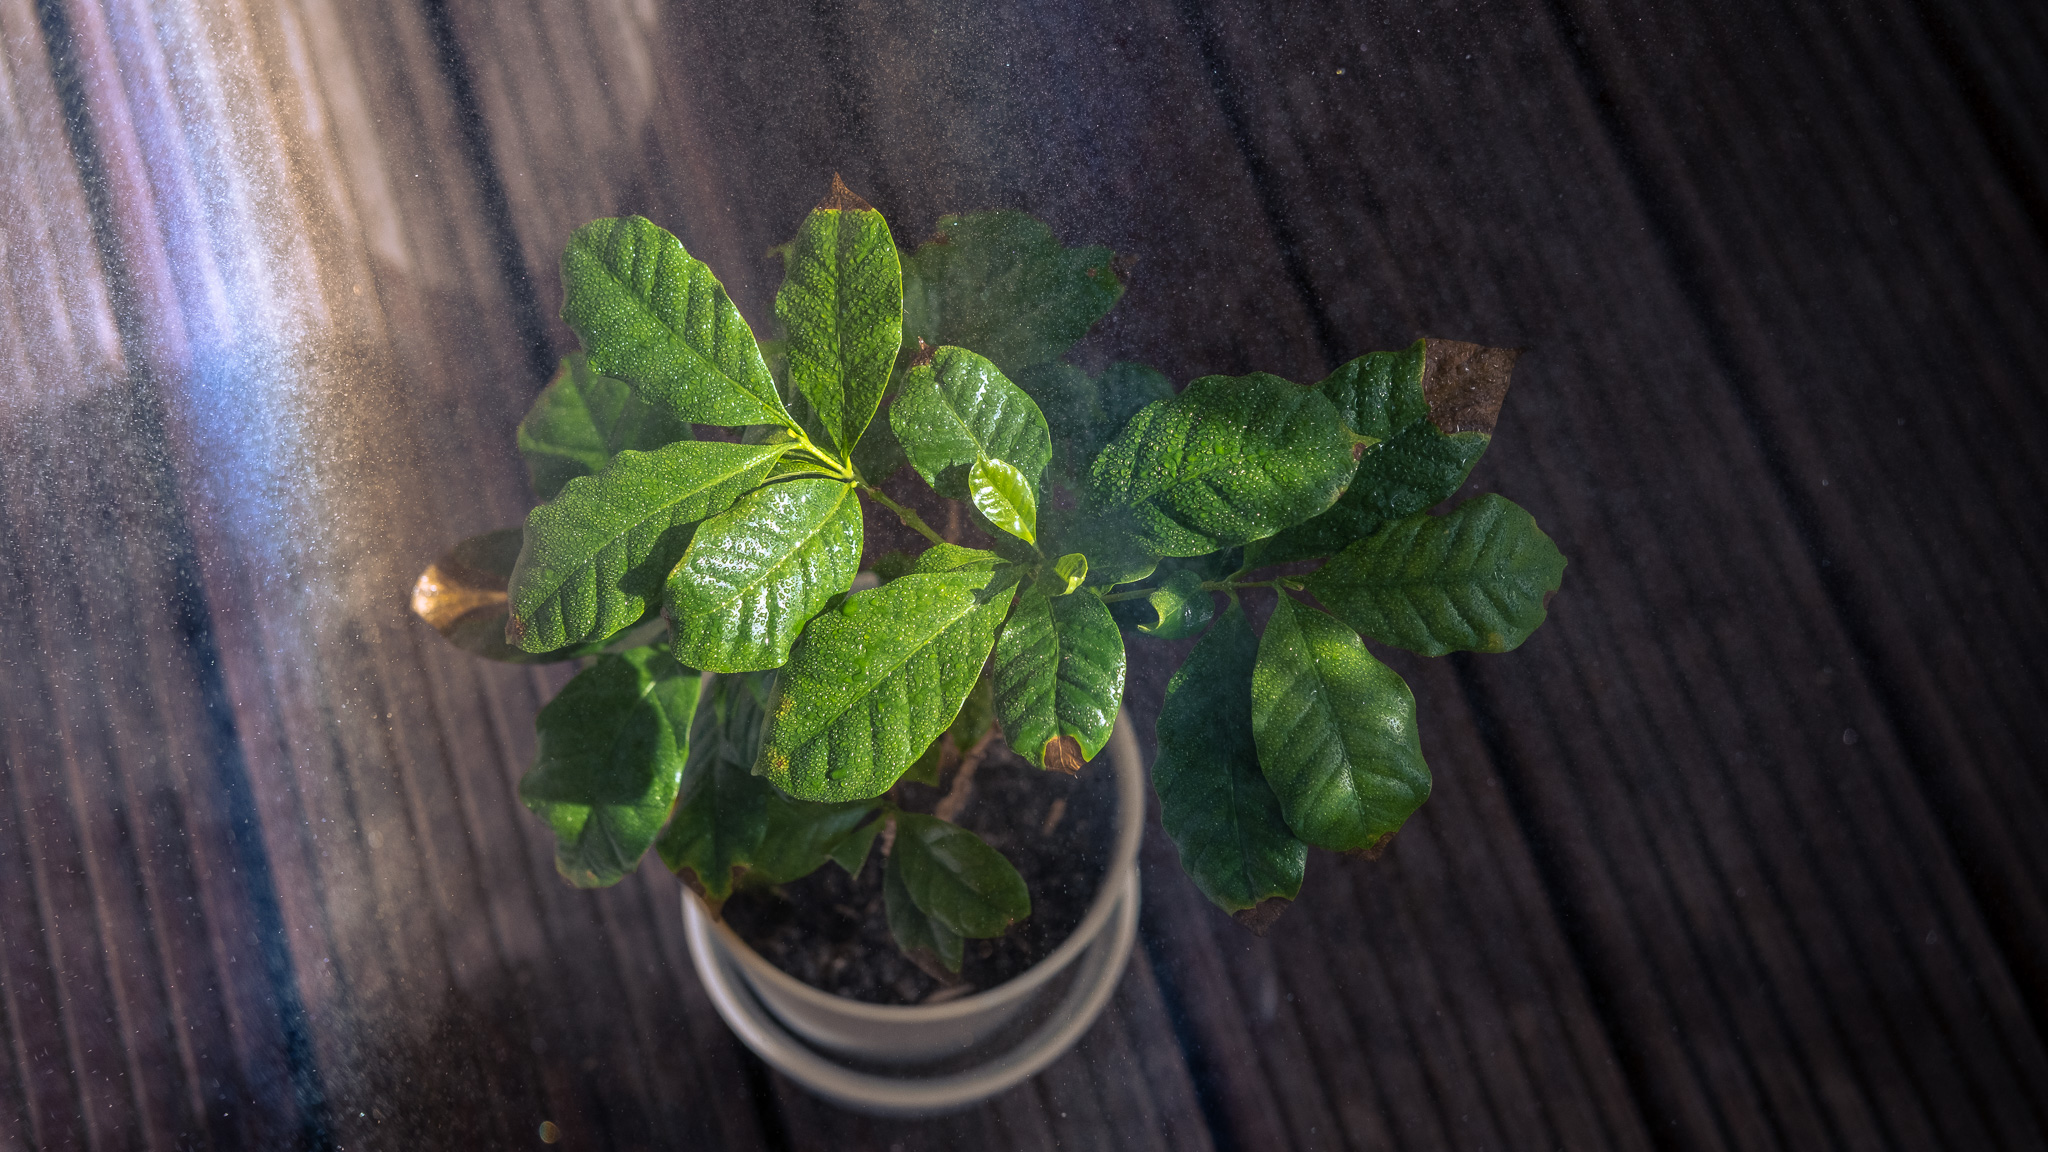 Grüne Blätter einer Kaffeepflanze schimmern grün, sie umgibt ein Nebel aus feinen Wassertröpfchen in denen die Sonne das Licht verschiedenfarbig reflektiert.